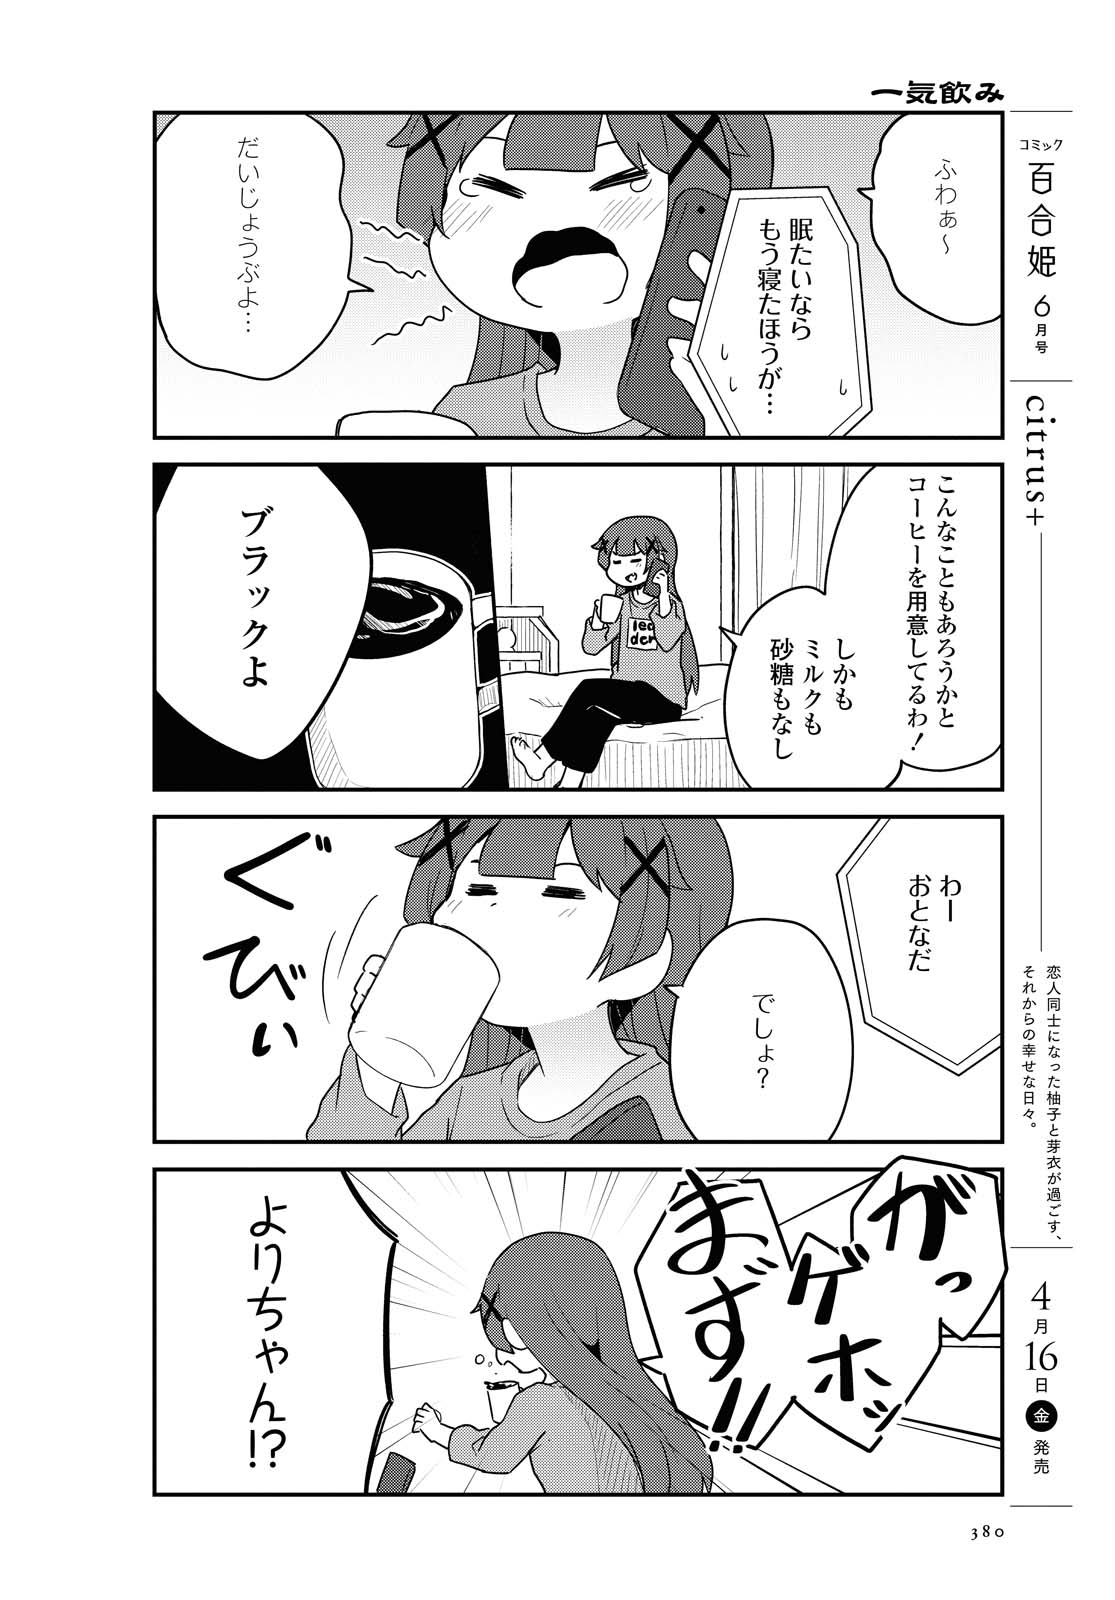 Watashi ni Tenshi ga Maiorita! - Chapter 80 - Page 6